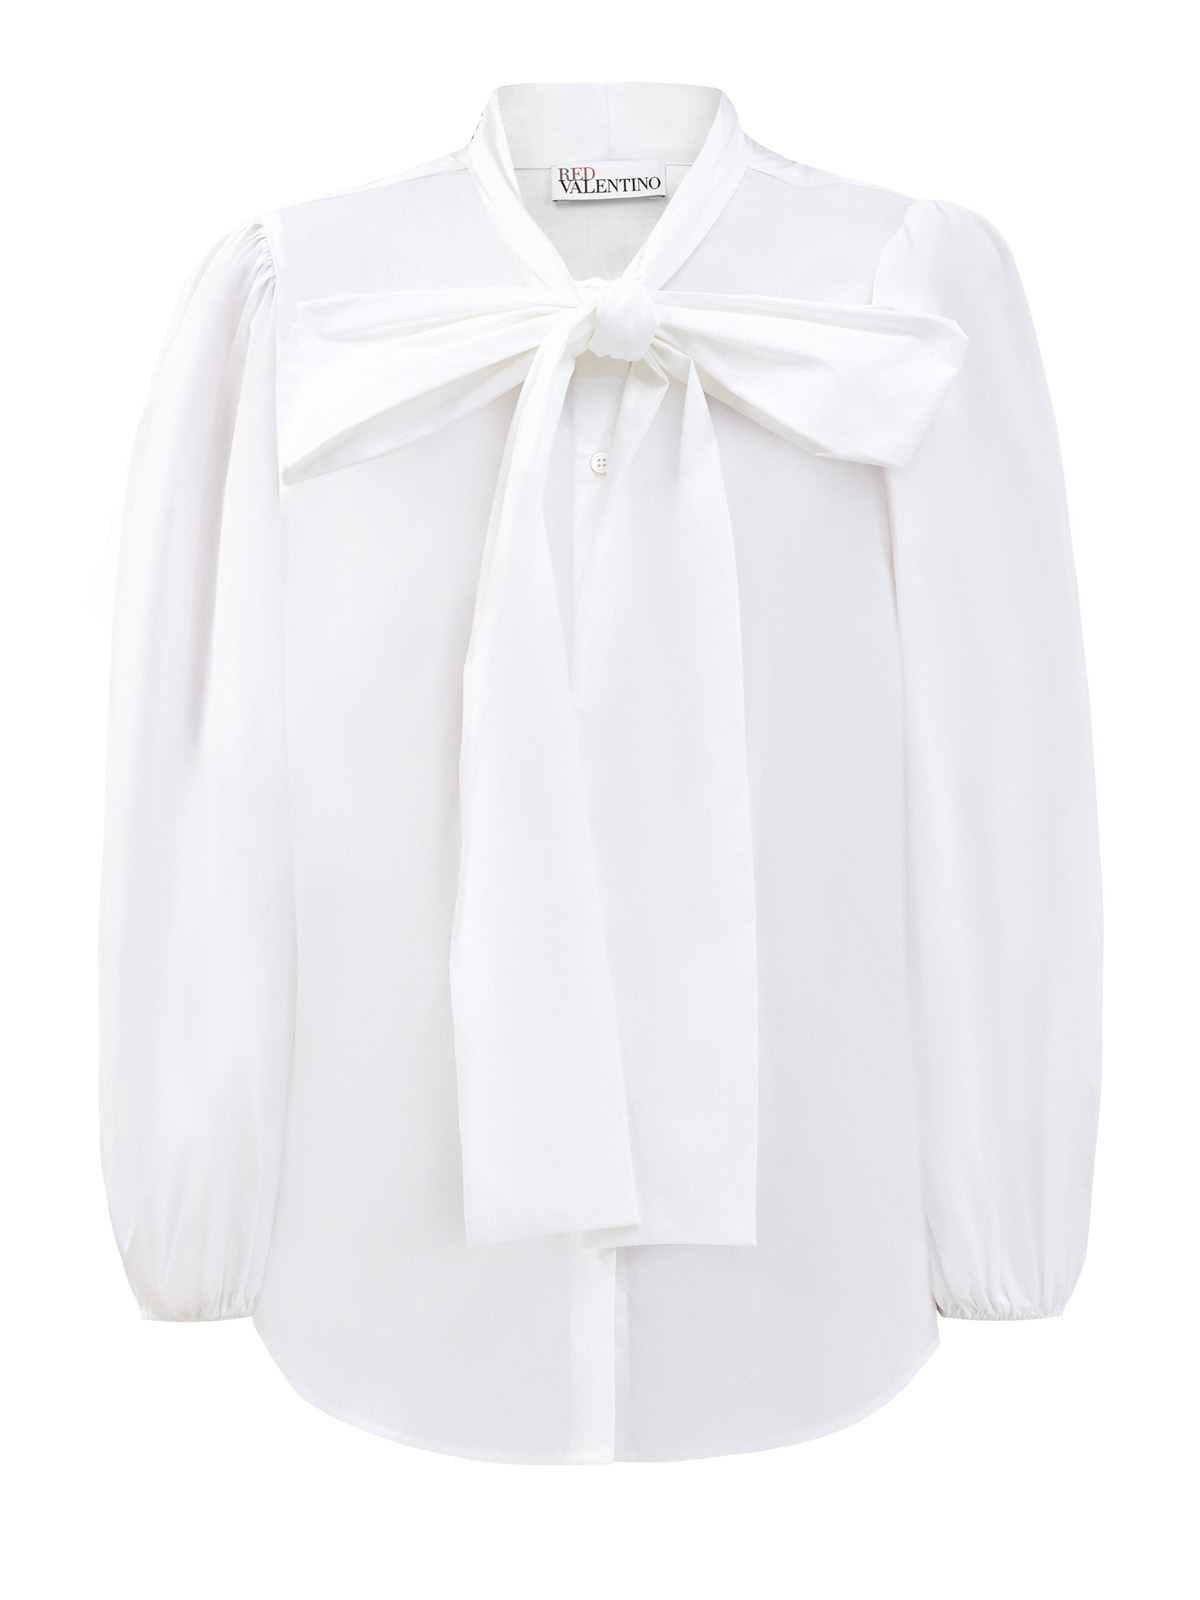 Рубашка из эластичного поплина с широким бантом REDVALENTINO, цвет белый, размер M;XL;S - фото 1